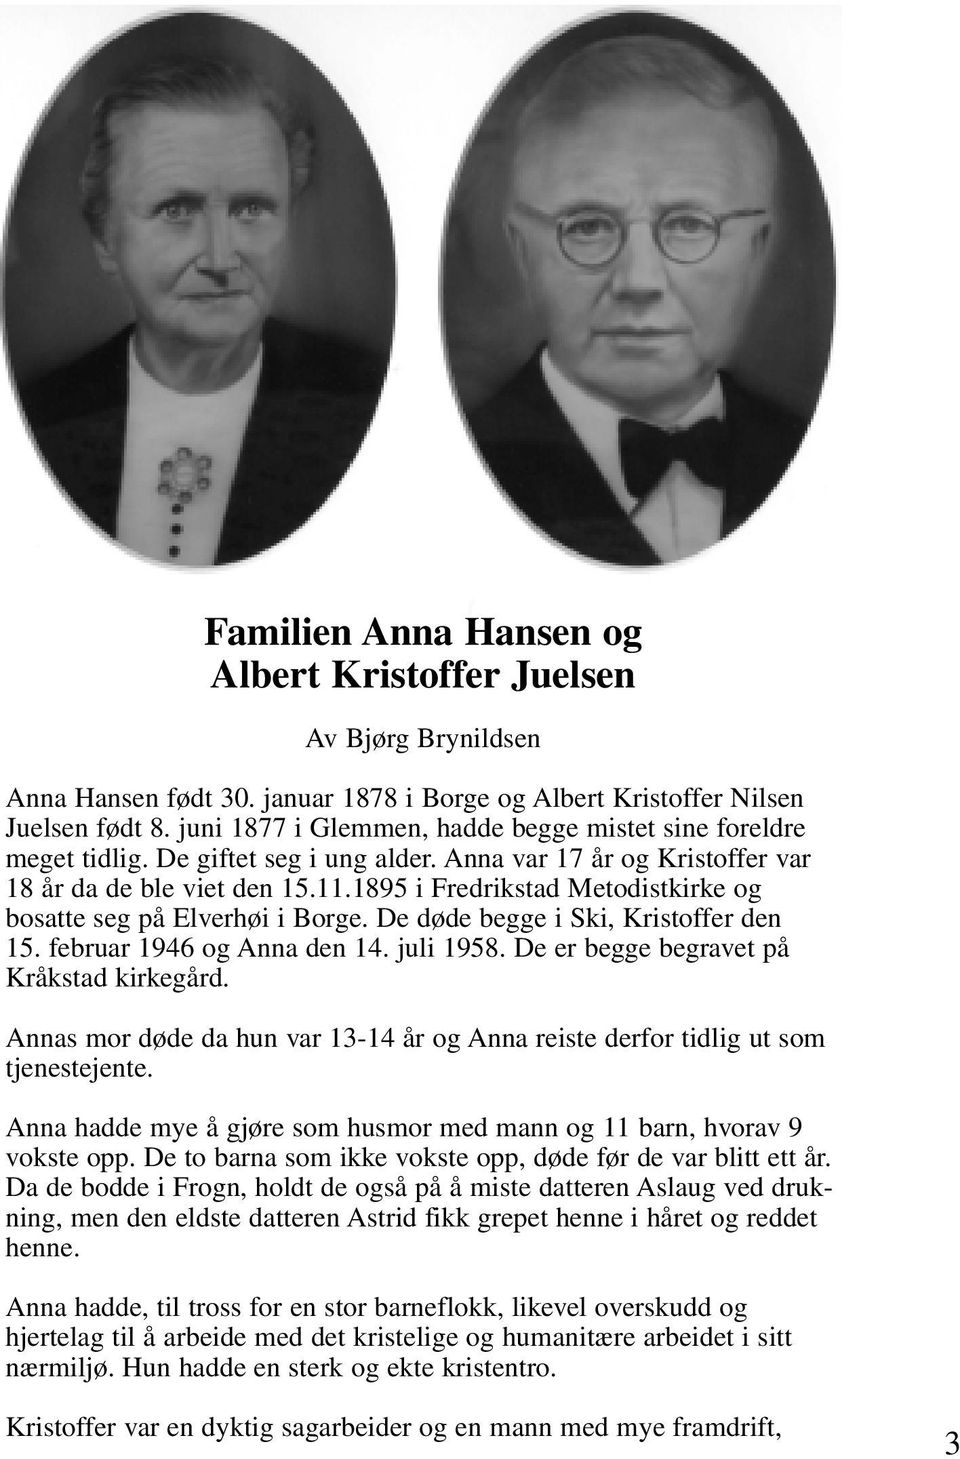 1895 i Fredrikstad Metodistkirke og bosatte seg på Elverhøi i Borge. De døde begge i Ski, Kristoffer den 15. februar 1946 og Anna den 14. juli 1958. De er begge begravet på Kråkstad kirkegård.